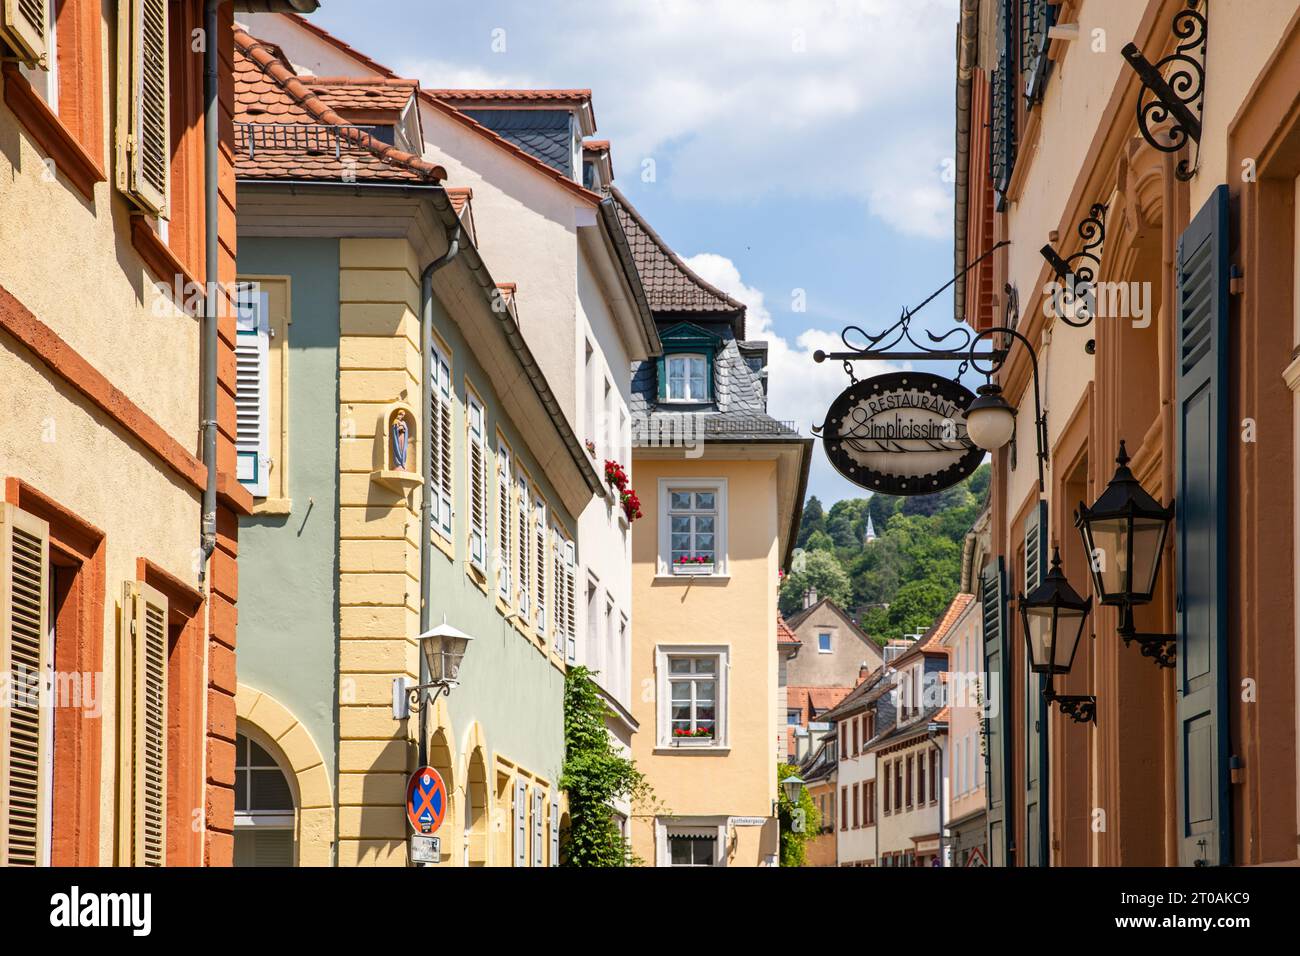 Accattivante Heidelberg: Una pittoresca veduta delle strade della città vecchia con case storiche in estate (destinazione Trvael in Germania) Foto Stock